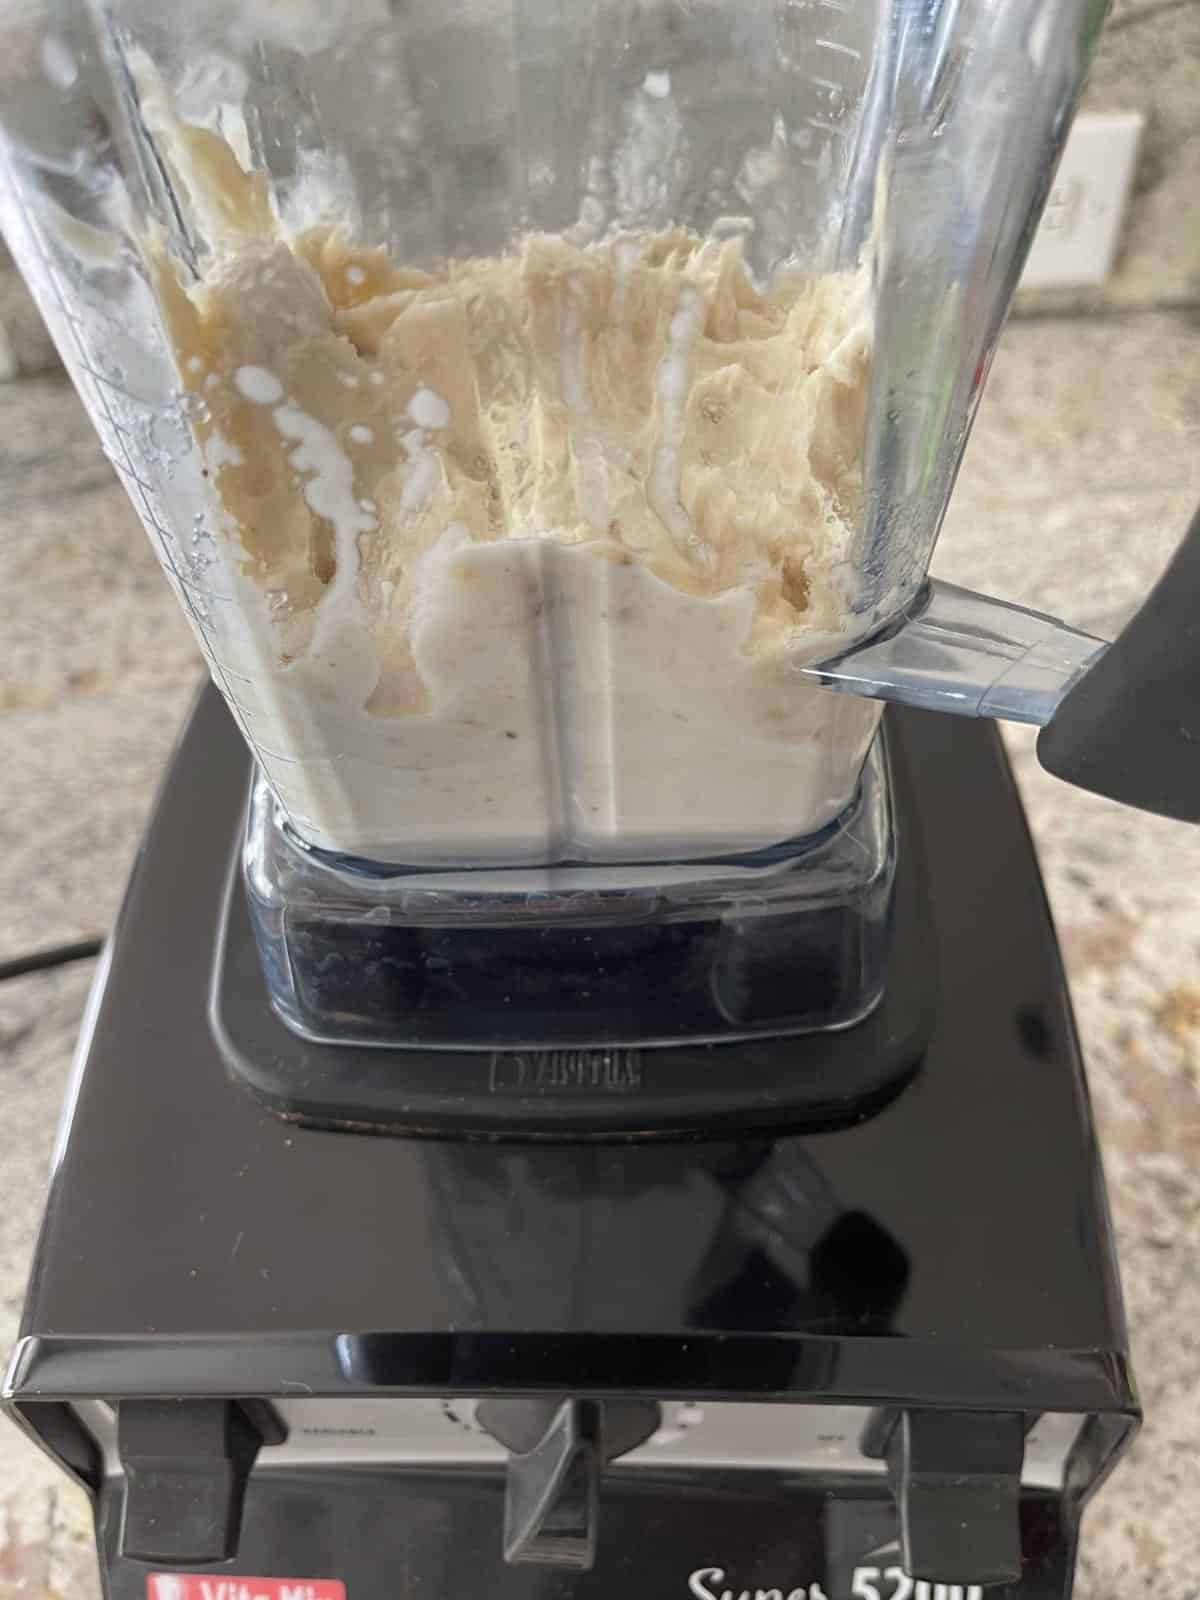 Blended frozen banana in Vitamix blender.